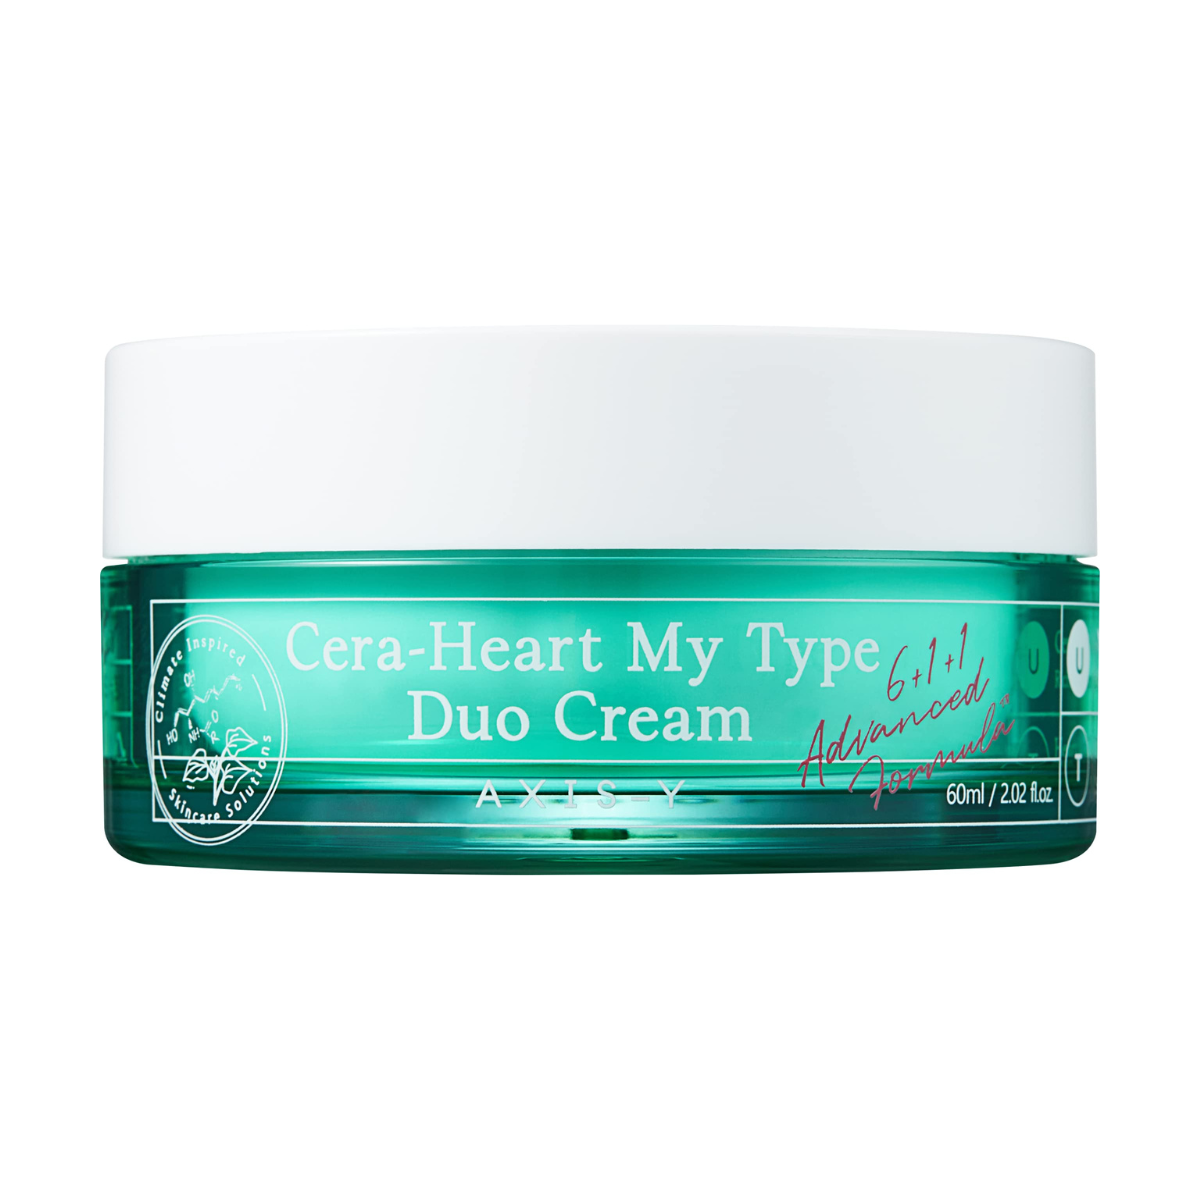 AXIS - Y Cera-Heart My Type Duo Cream - TokTok Beauty